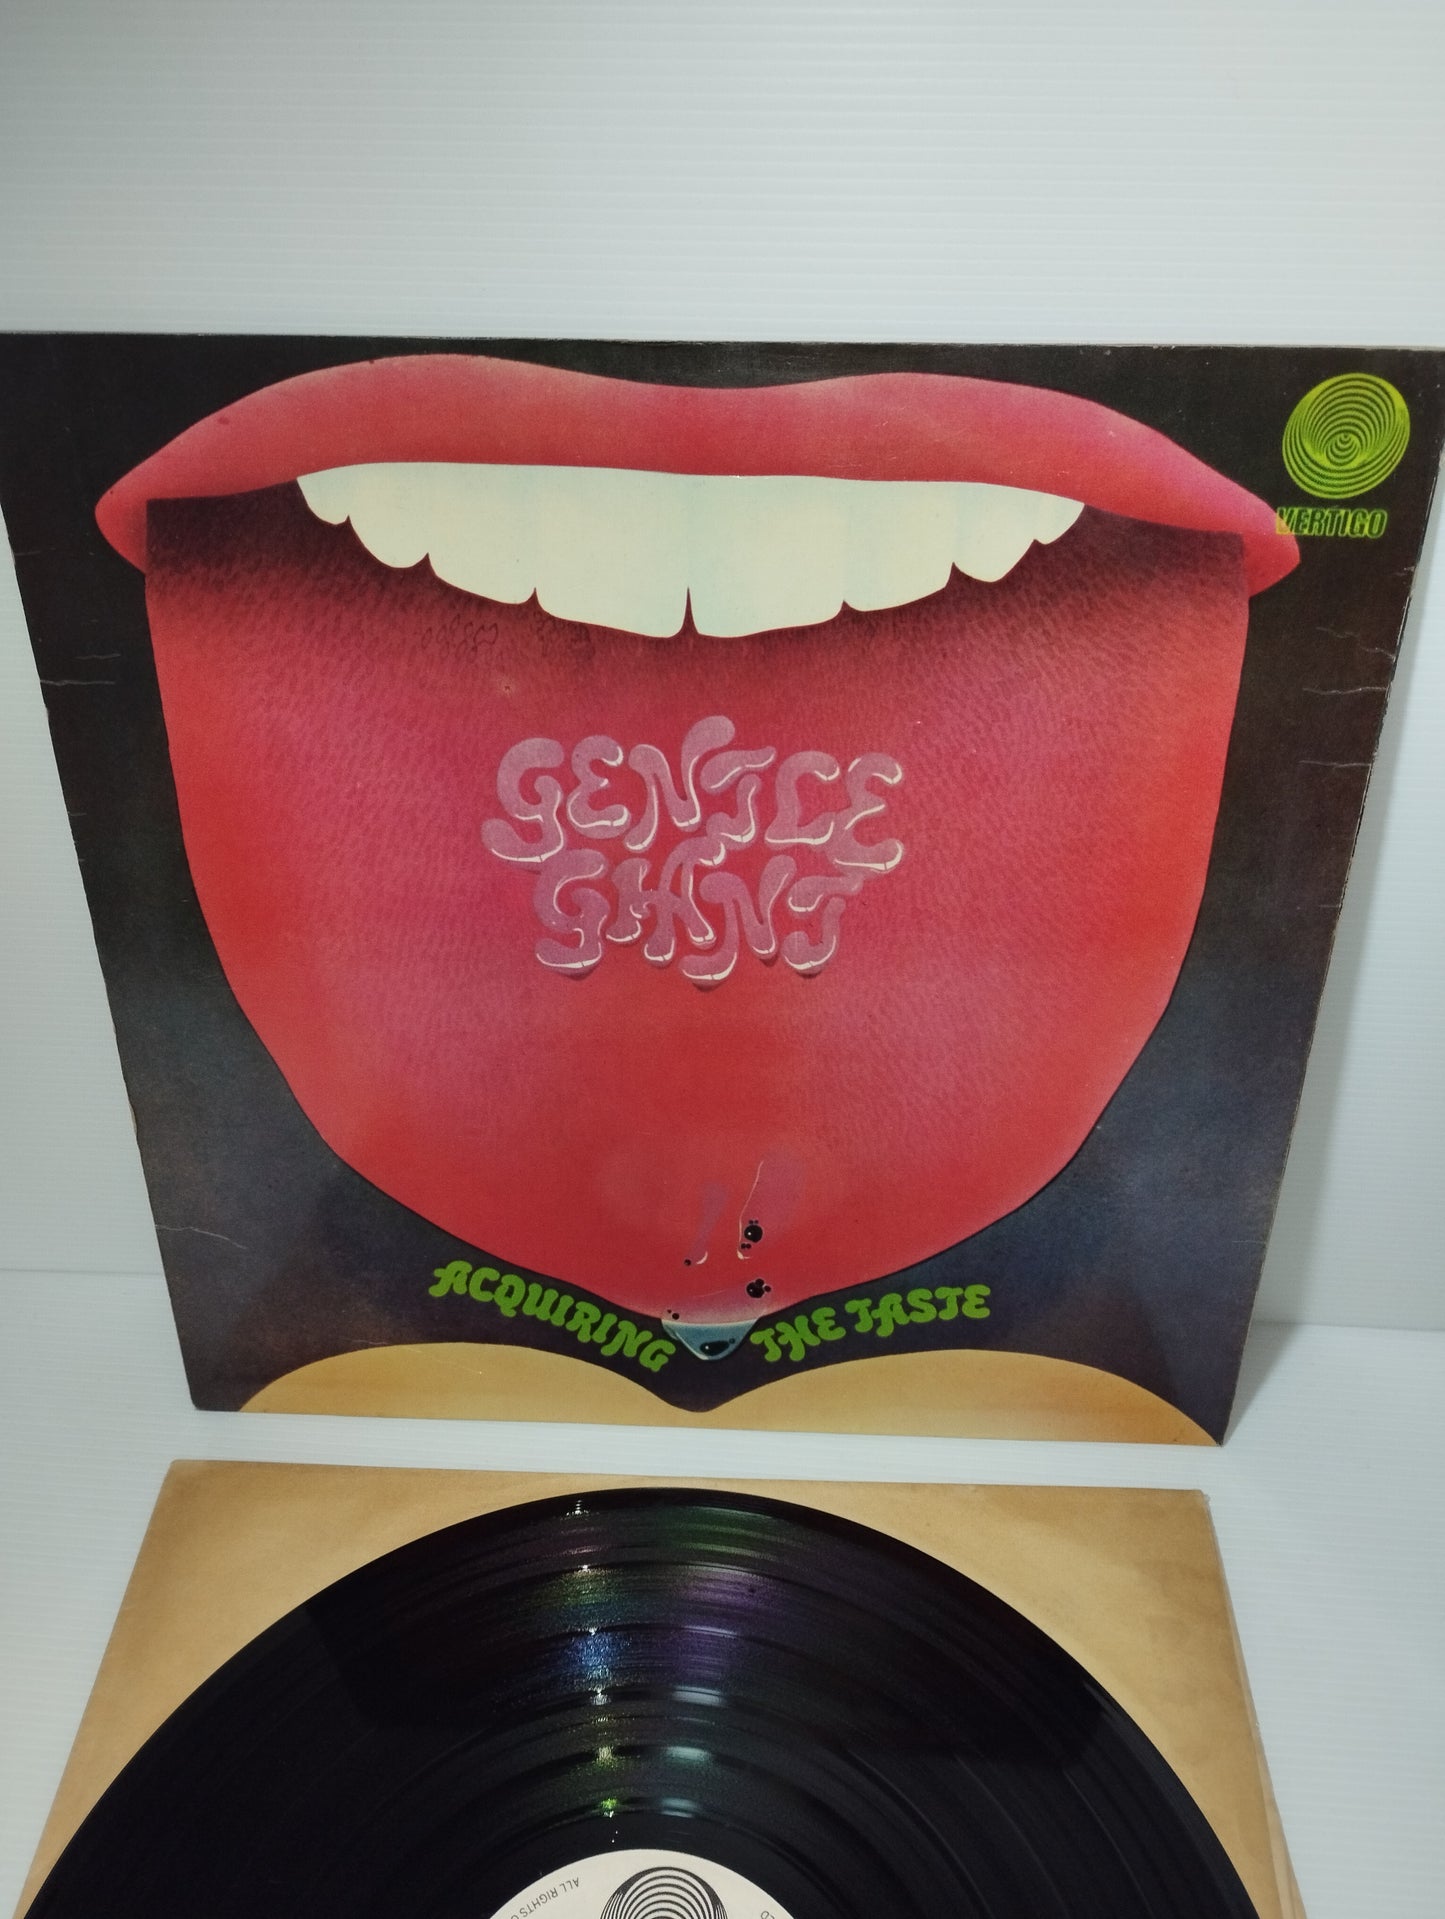 Acquiring The Taste Gentle Giant LP 33 RPM